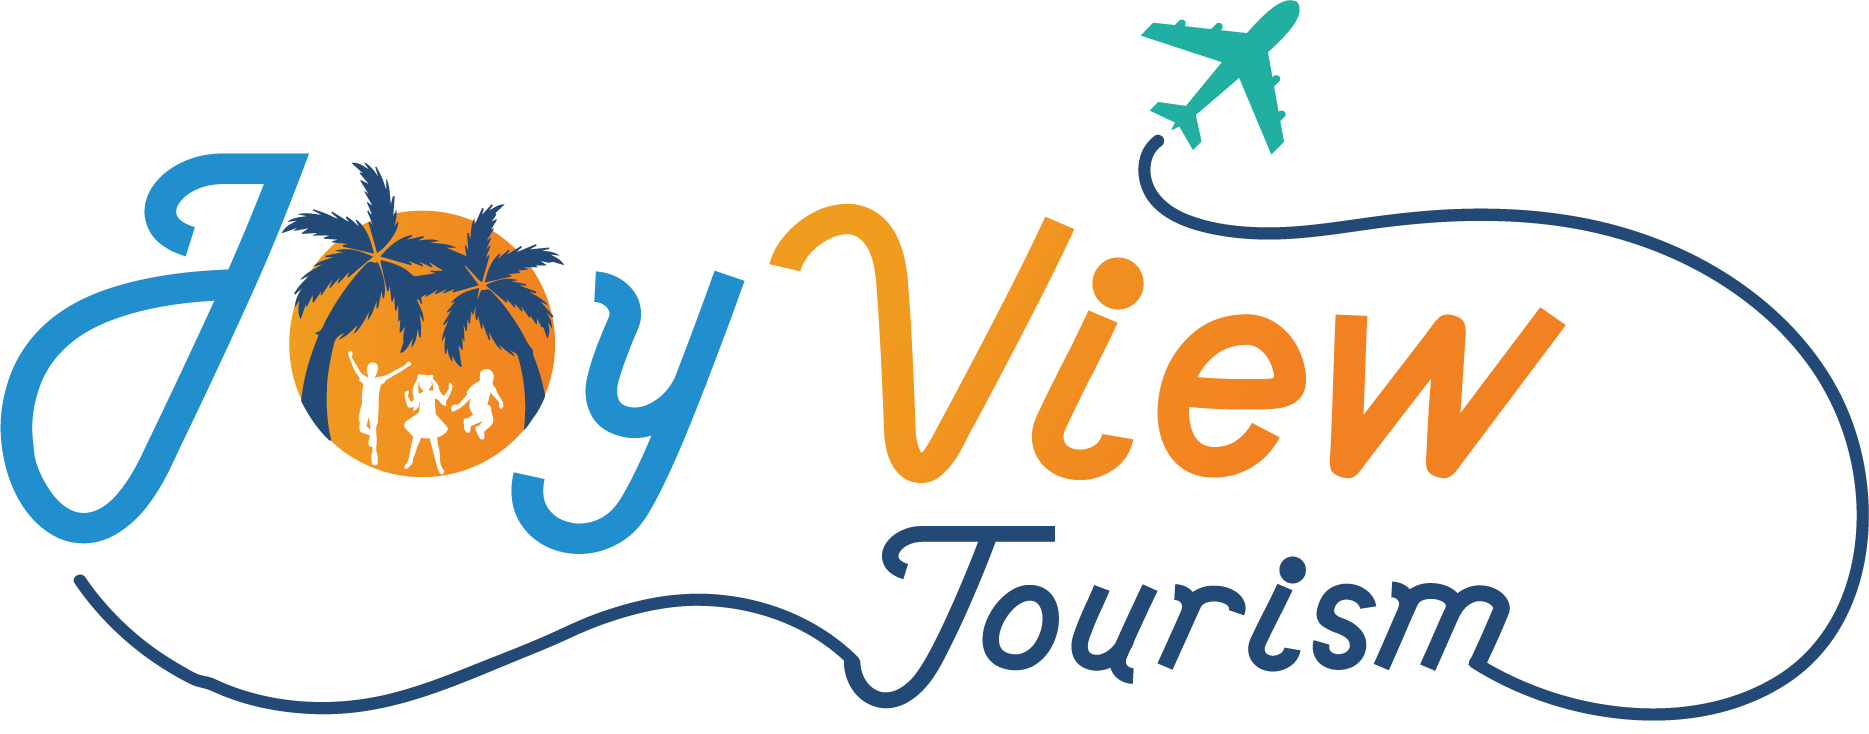 Joy View Tourism LLC Logo